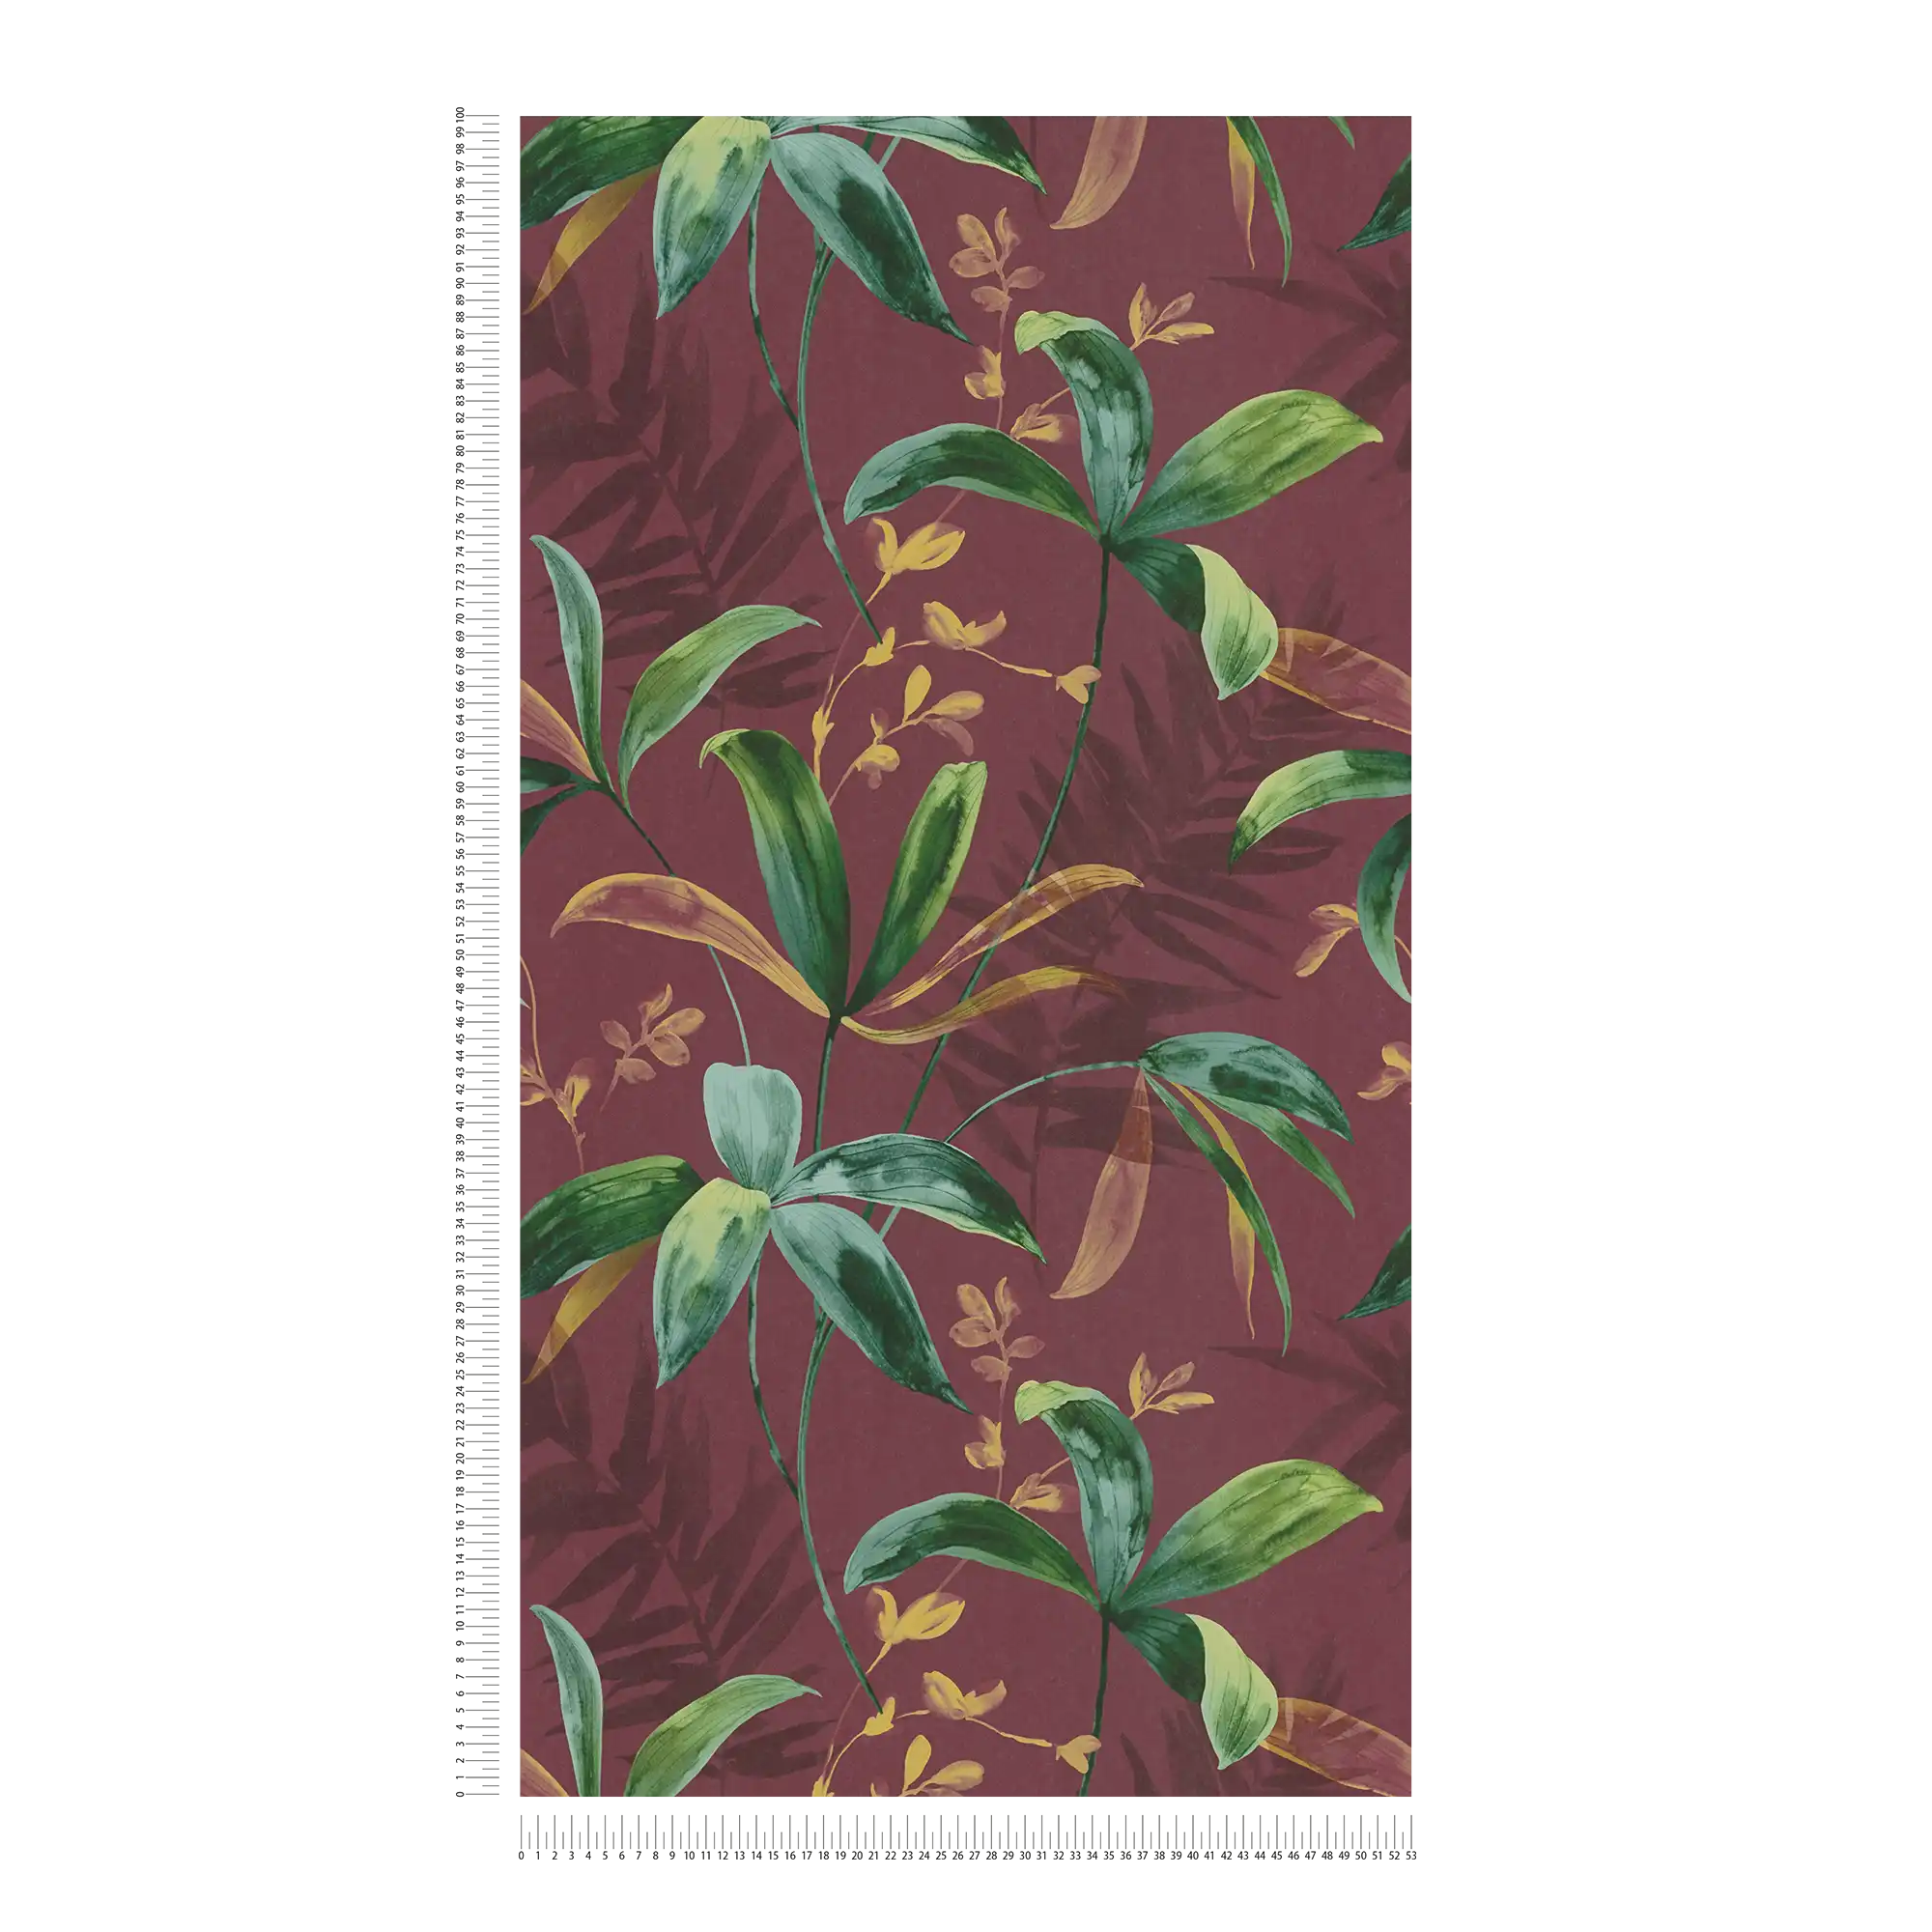             Donkerrood behangpapier met groene bladeren in aquarelstijl - rood, groen, geel
        